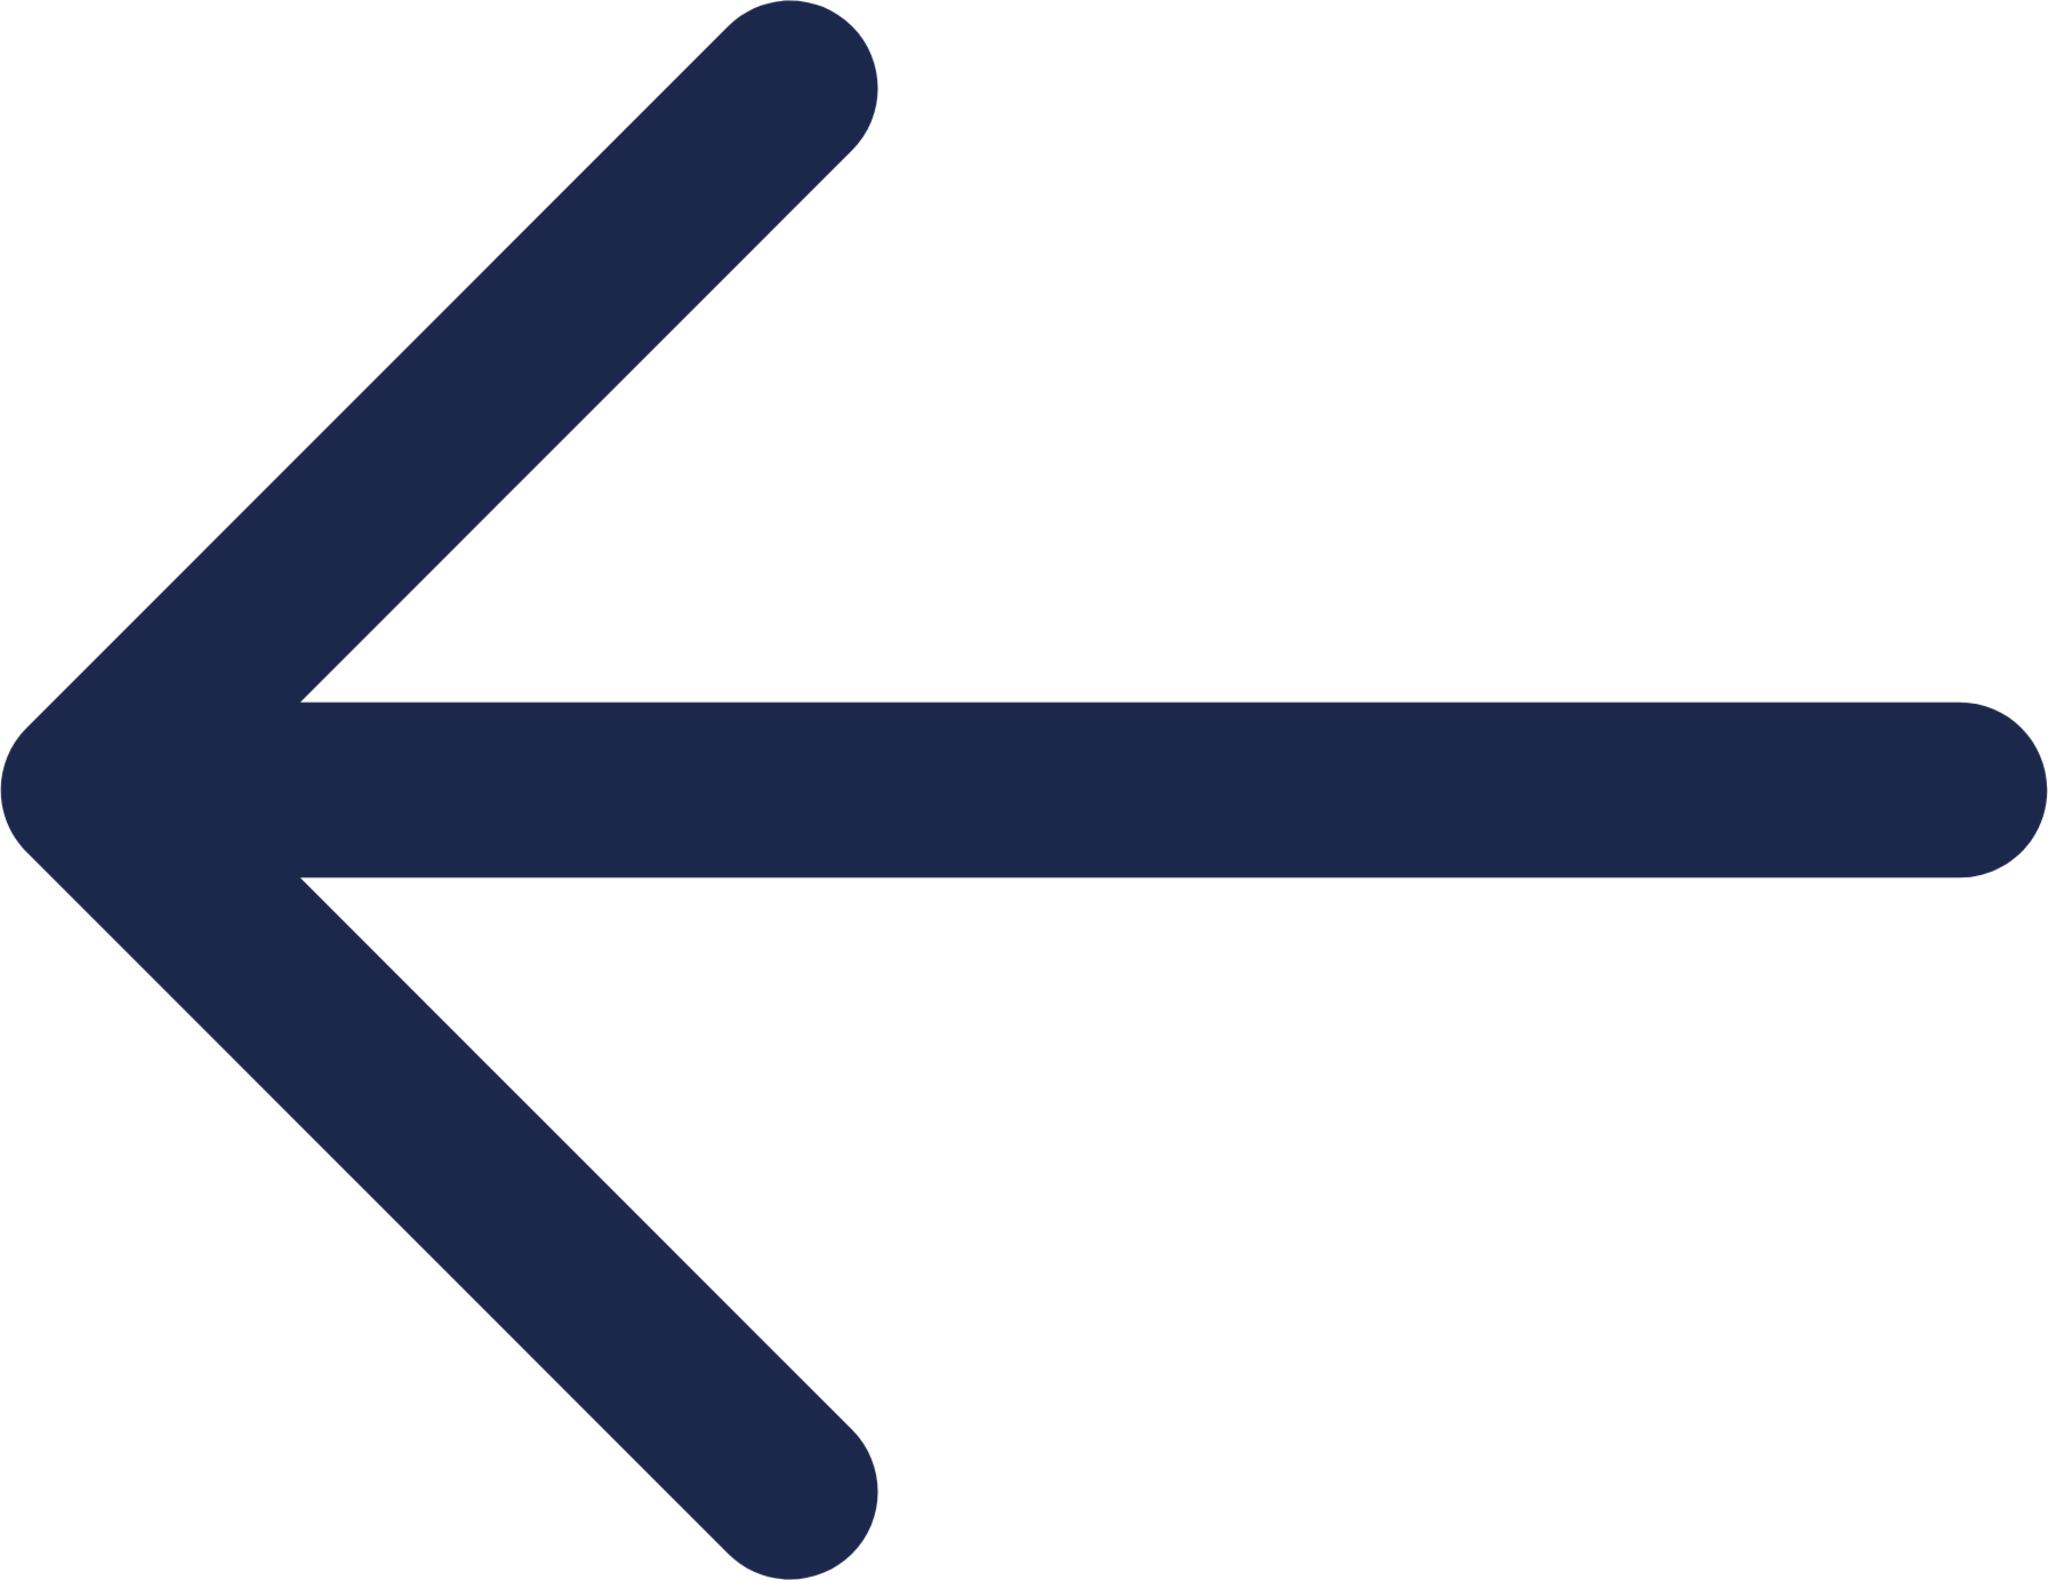 Arrow Left icon